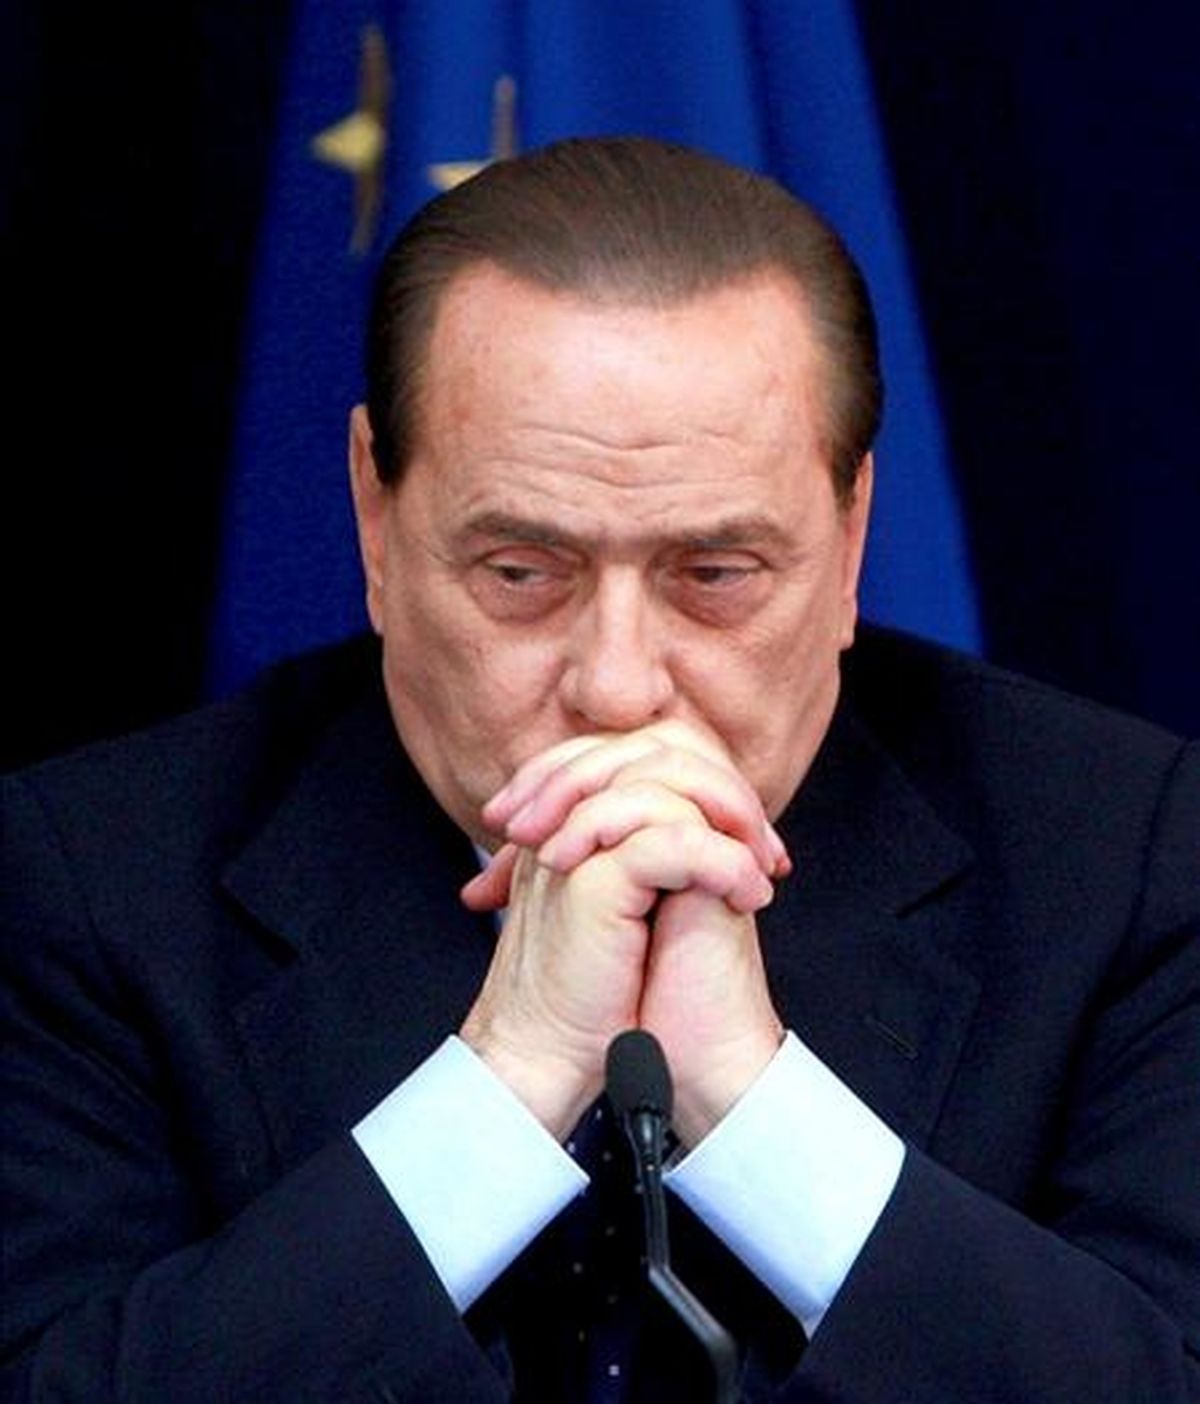 El primer ministro italiano, Silvio Berlusconi. EFE/Archivo